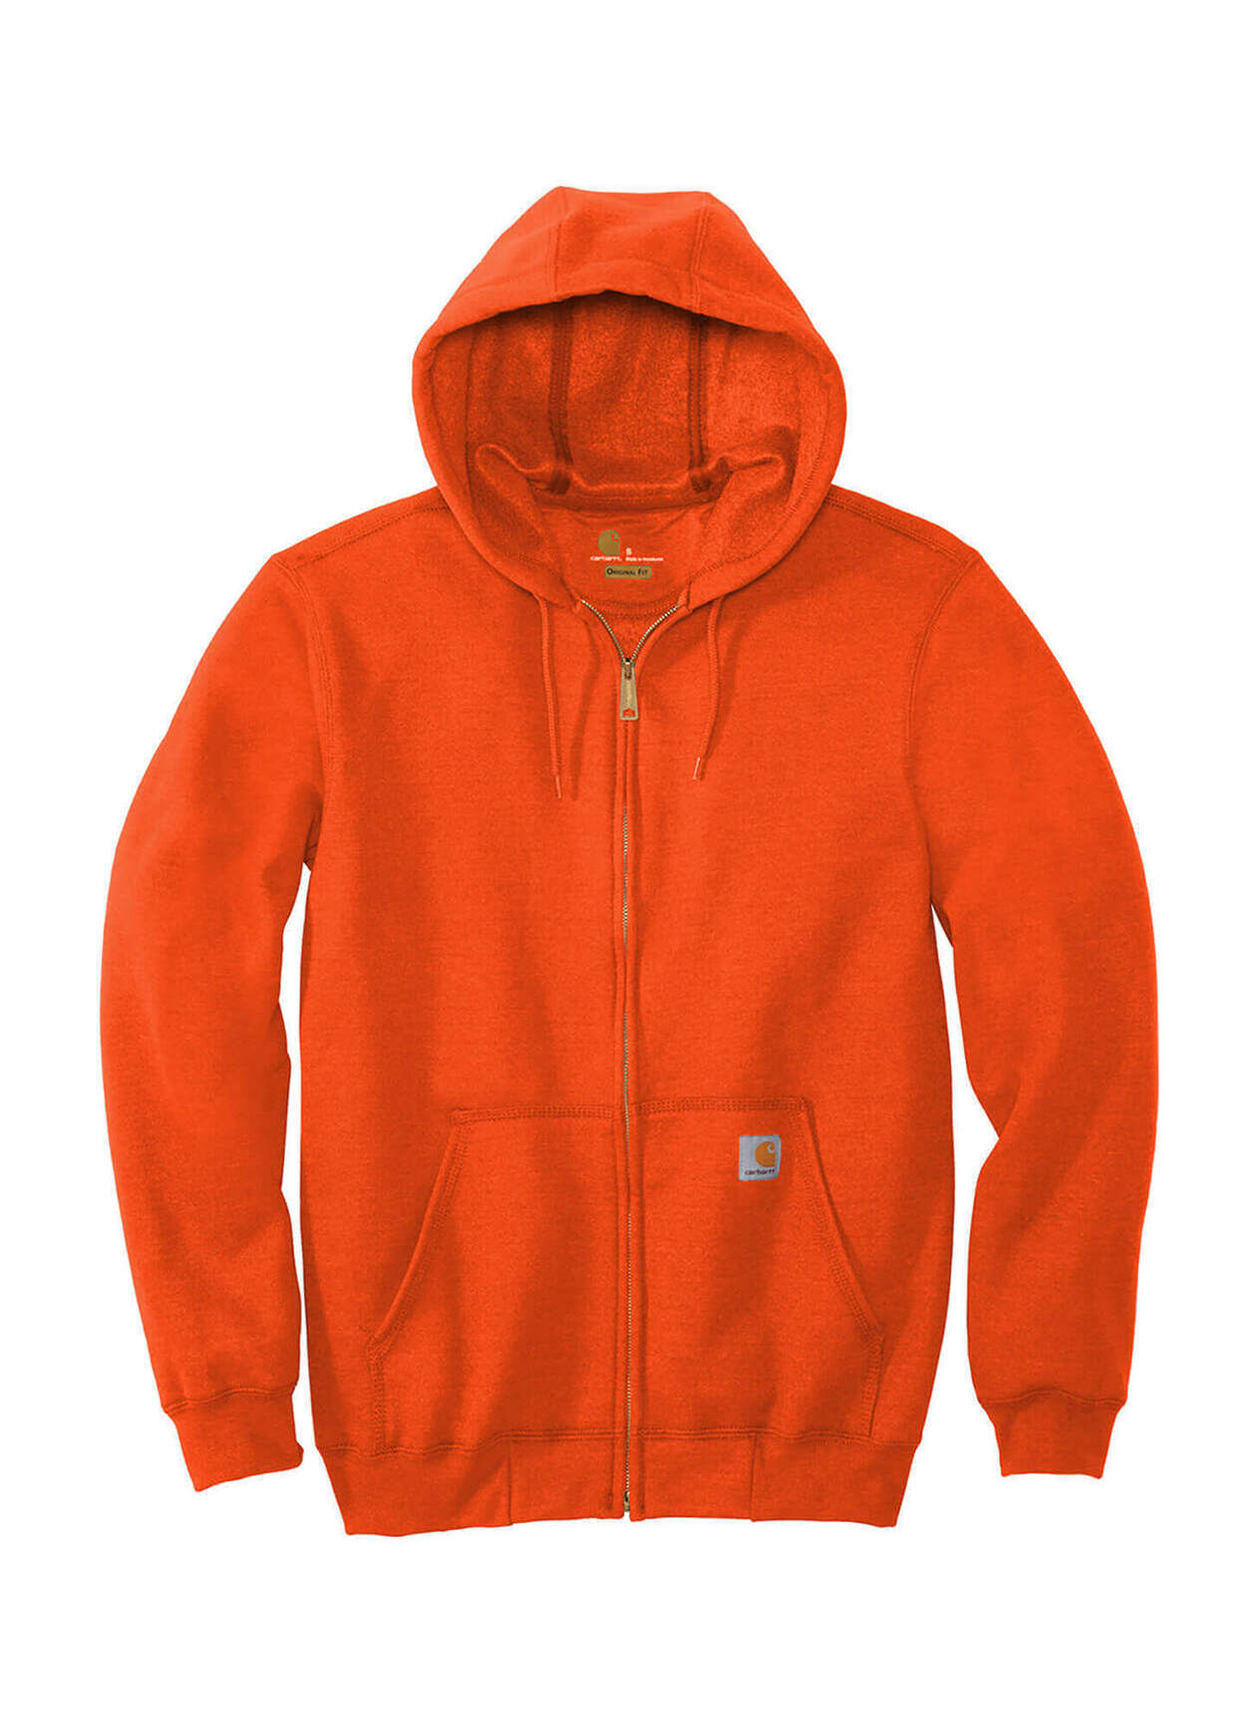 Carhartt Zip Hooded Sweatshirt - Hoodie Men's